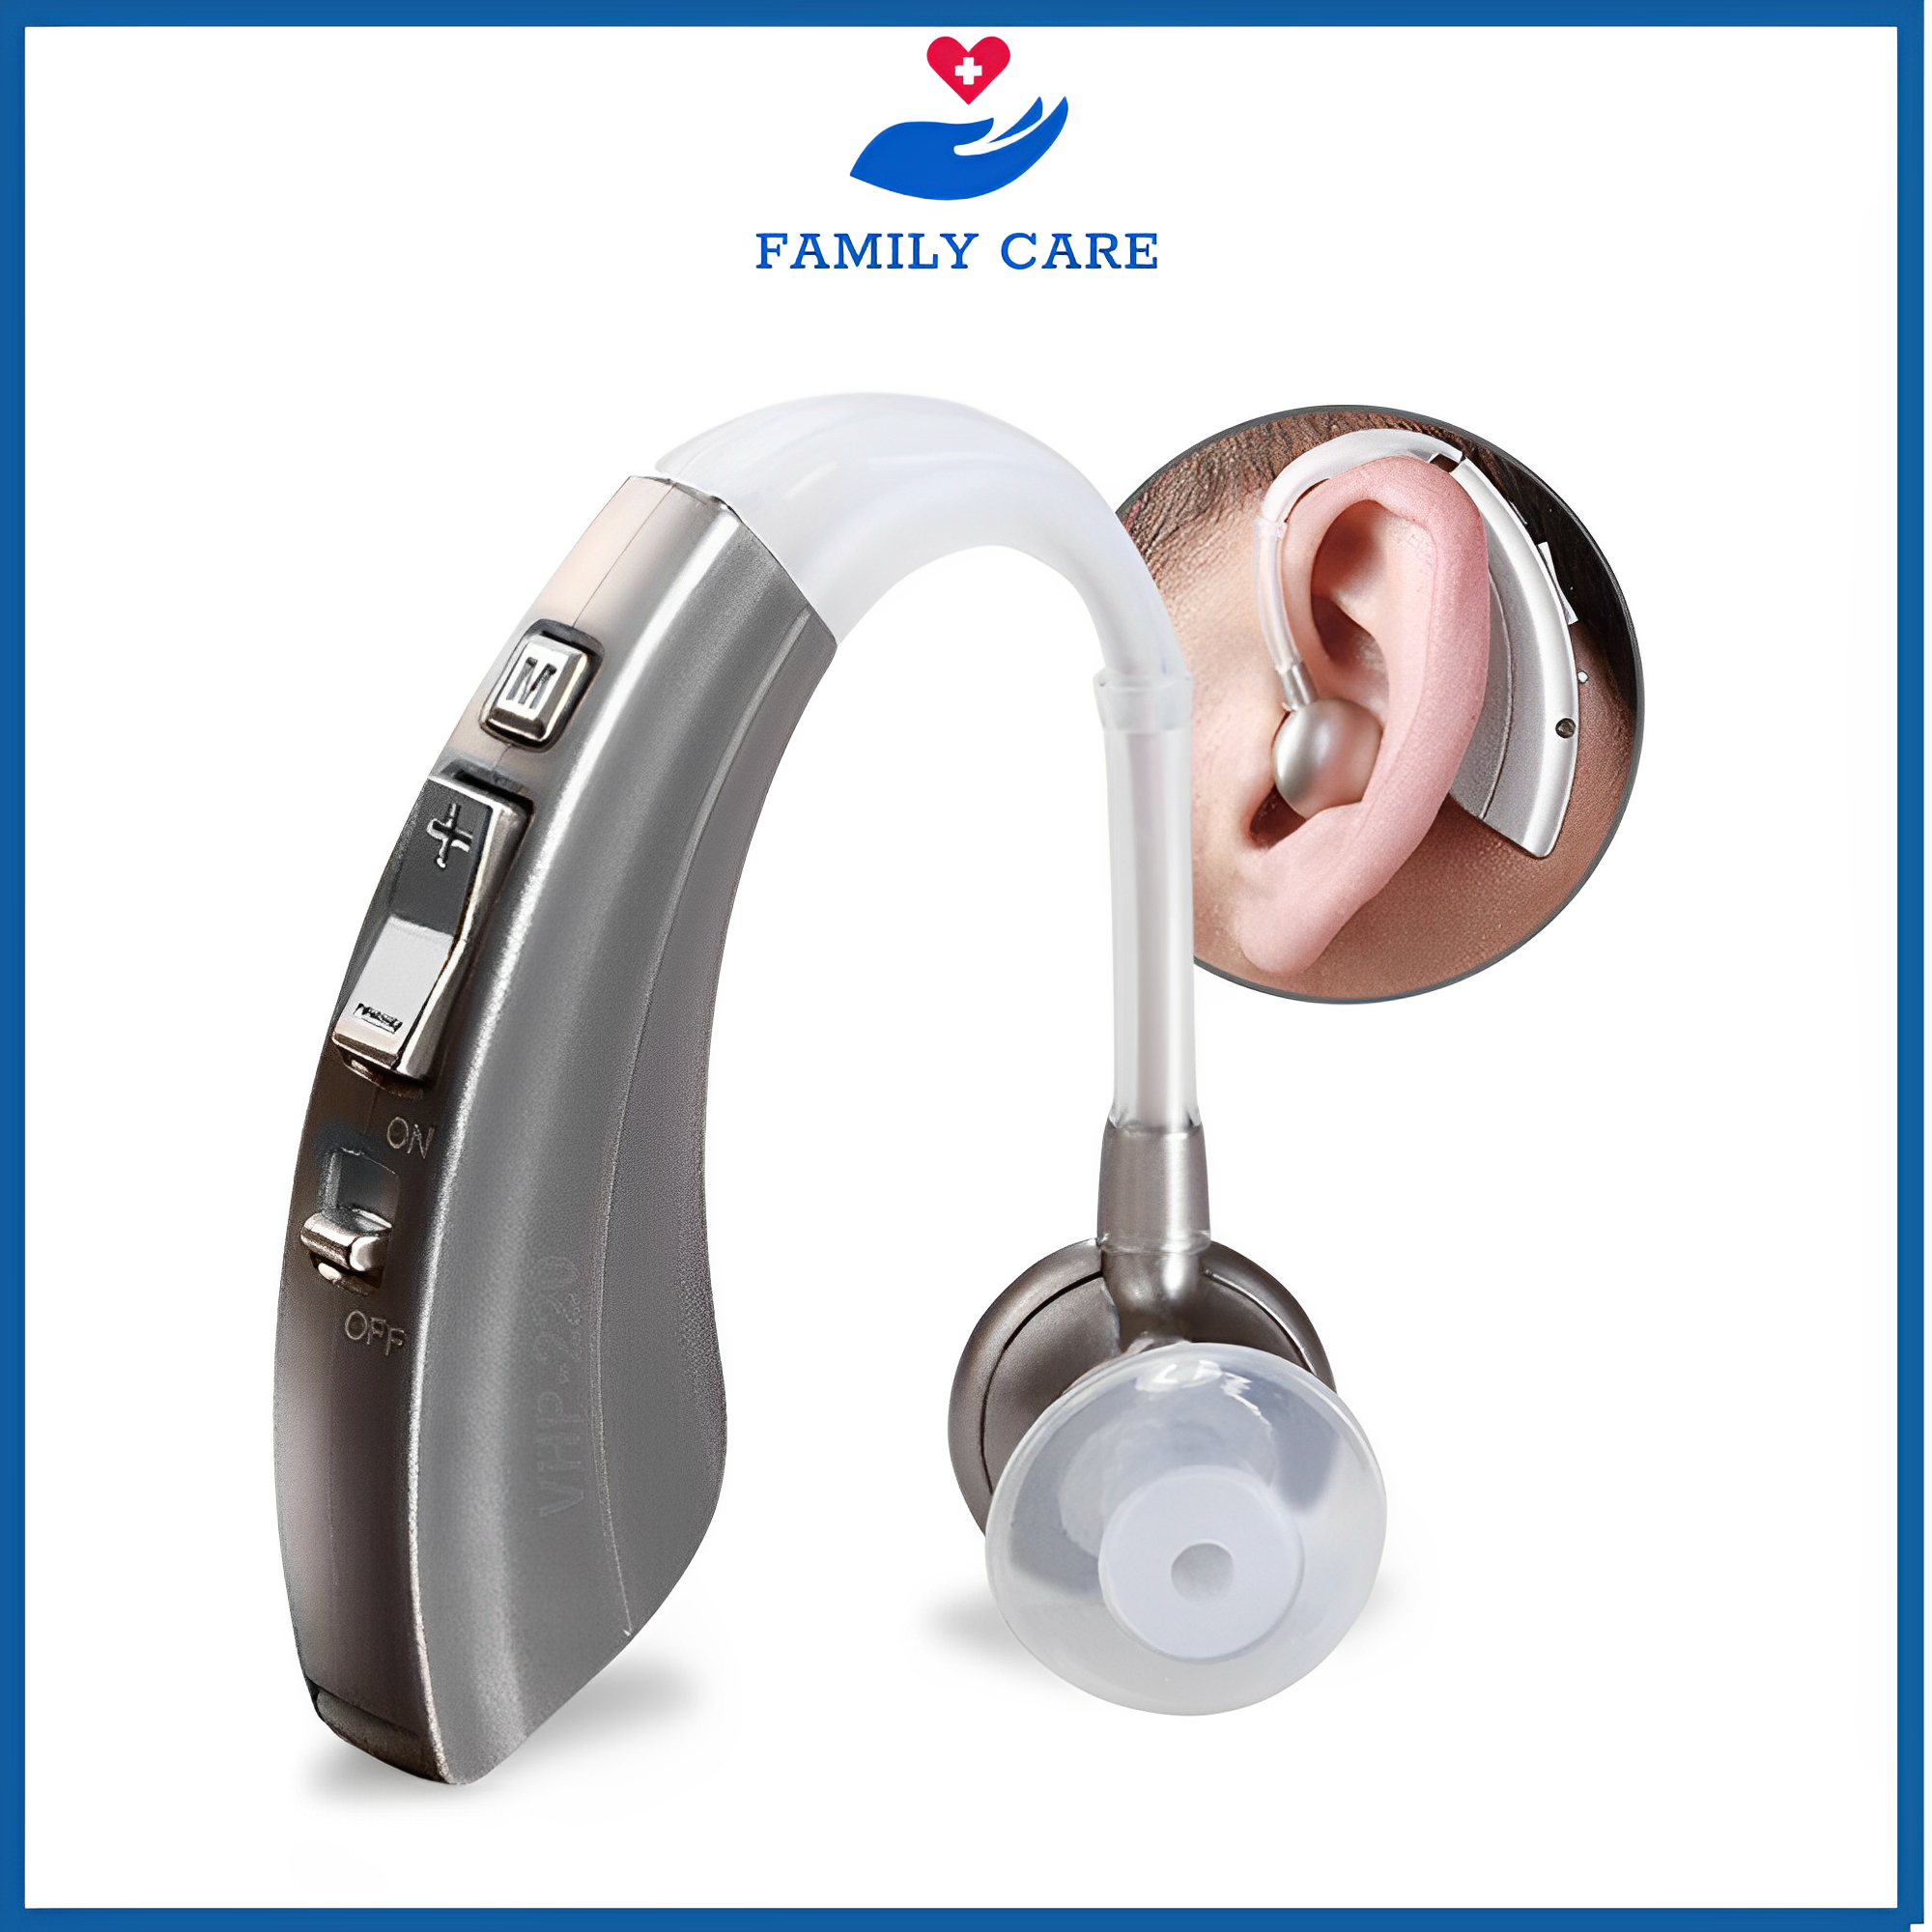 Máy trợ thính không dây cho người già VHP 220,tai nghe trợ thính,lọc tiếng ồn và khuếch đại âm thanh lớn hỗ trợ cho những người bị điếc nặng hay thính lực suy giảm ở mức độ nặng